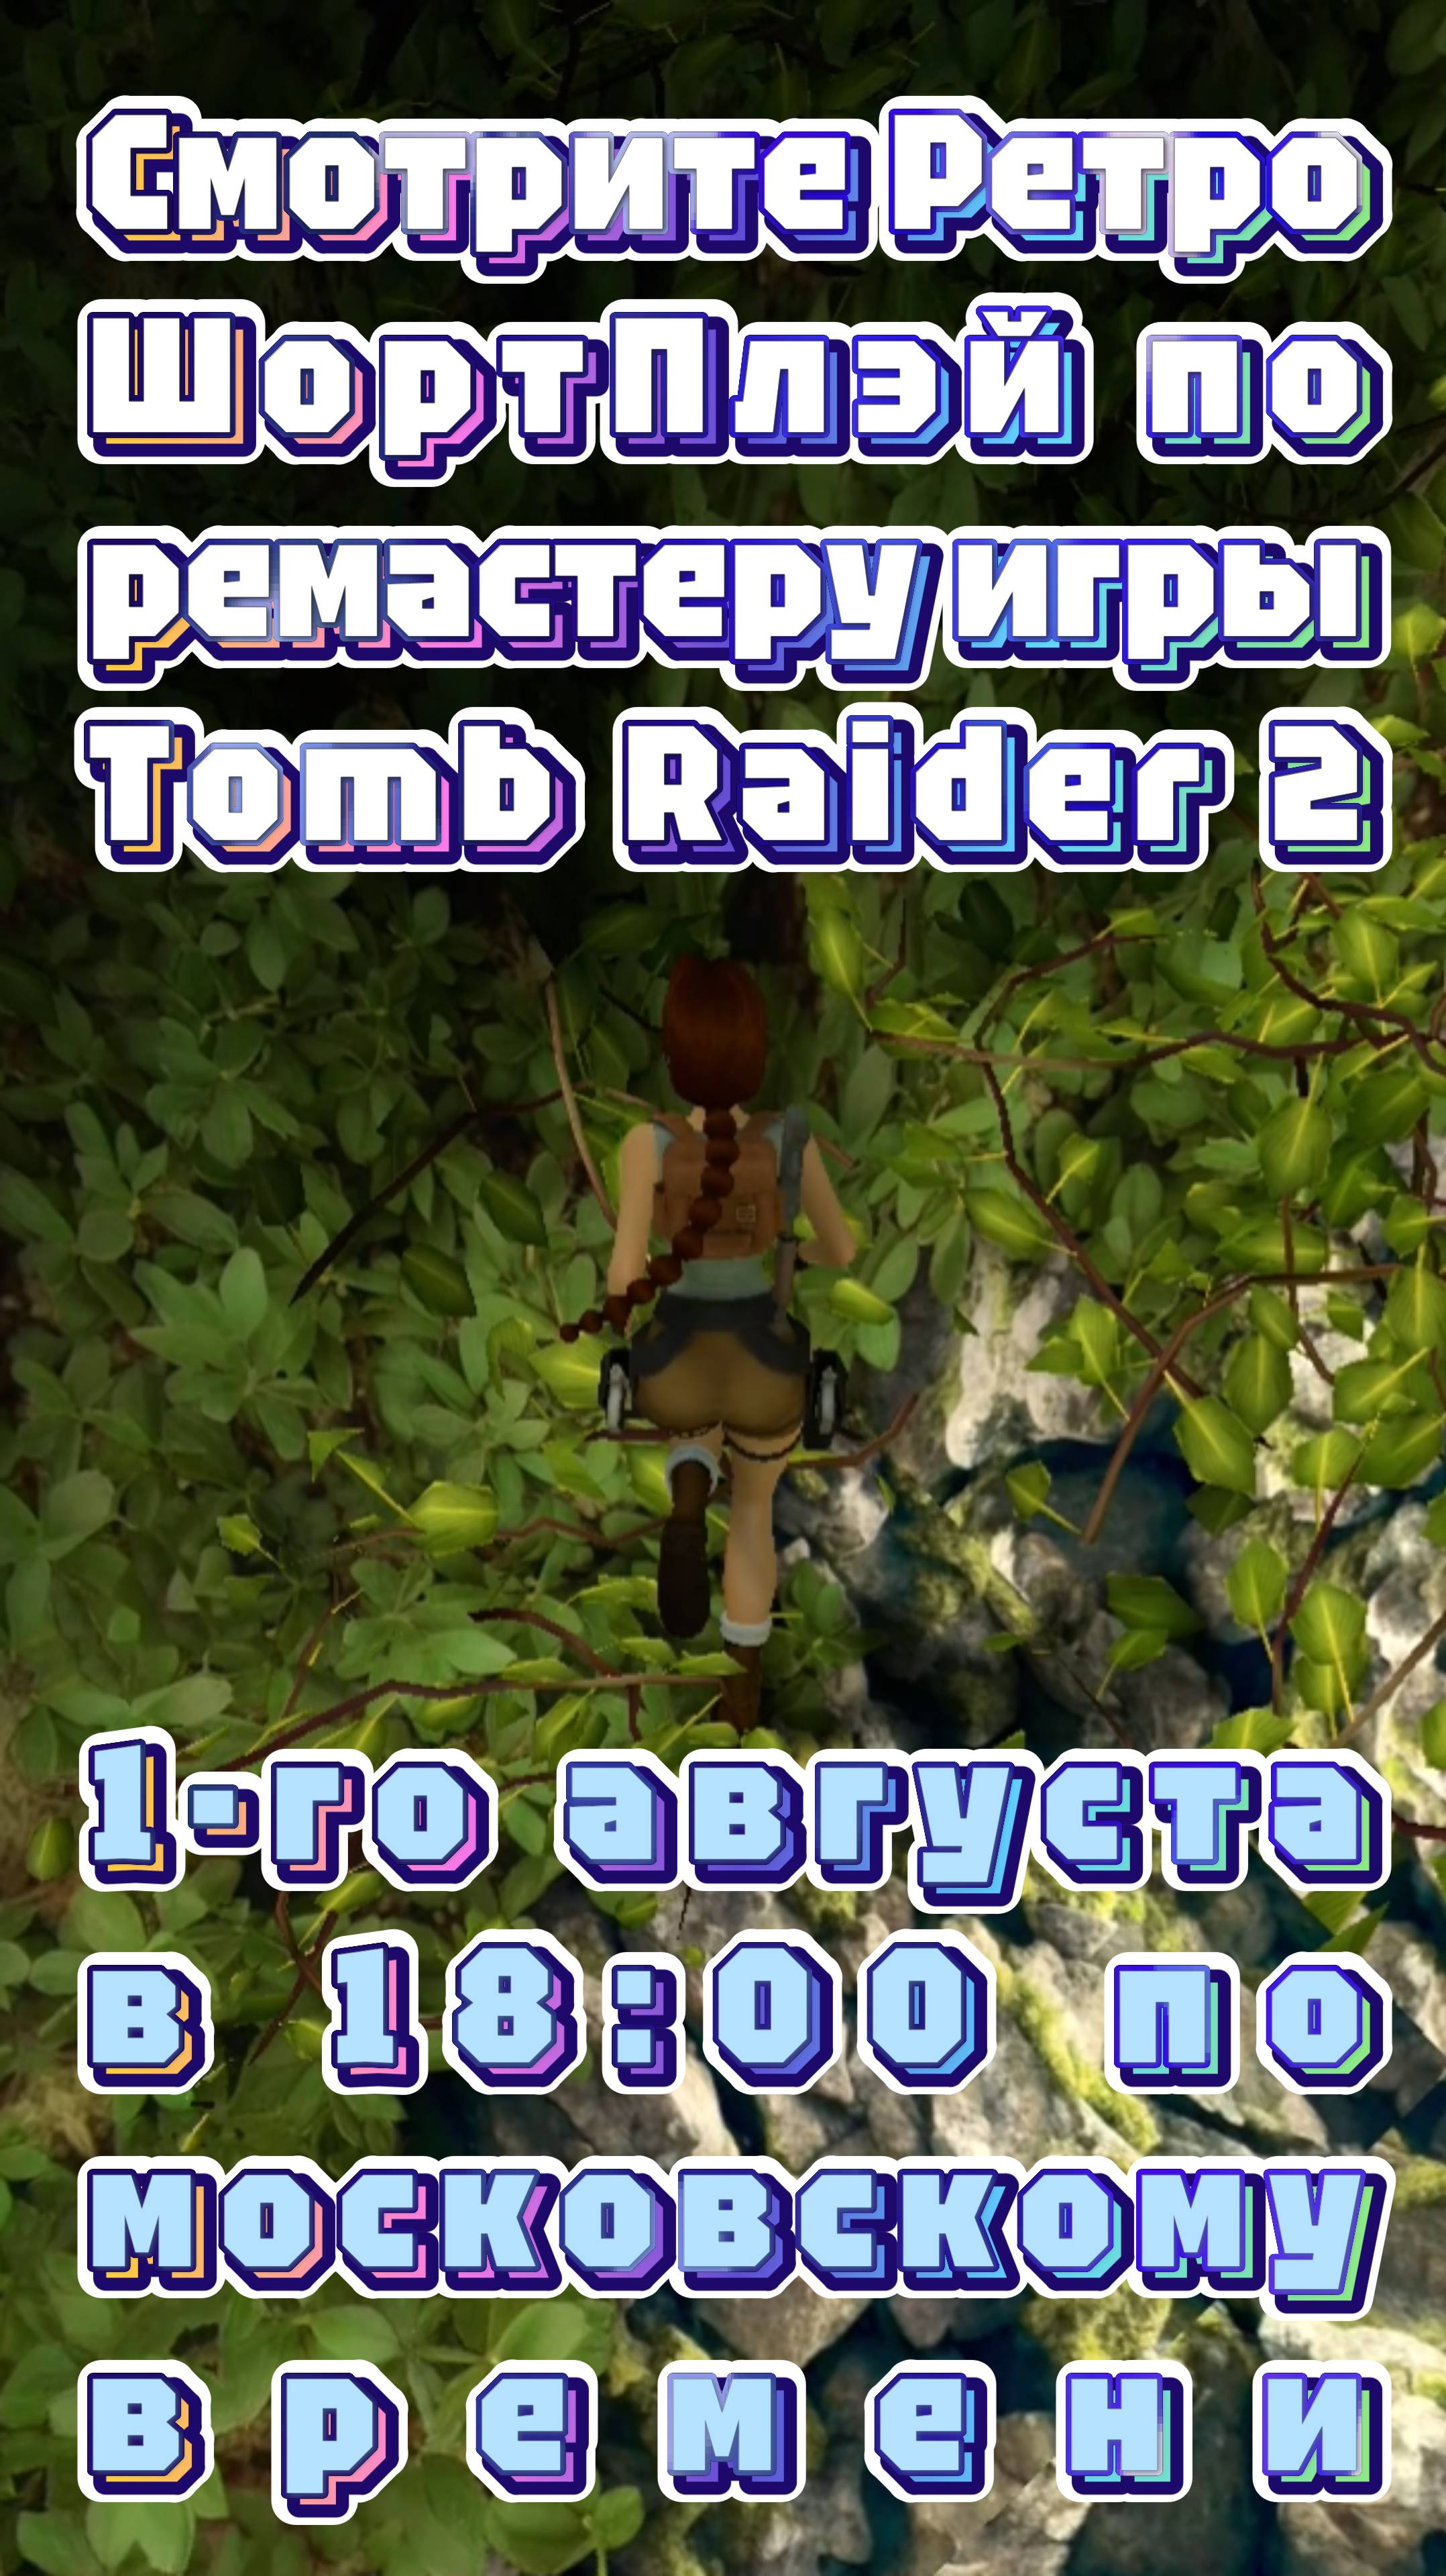 В самОй... на самОм...
Тизер к Ретро ШортПлэю ремастера Tomb Raider 2